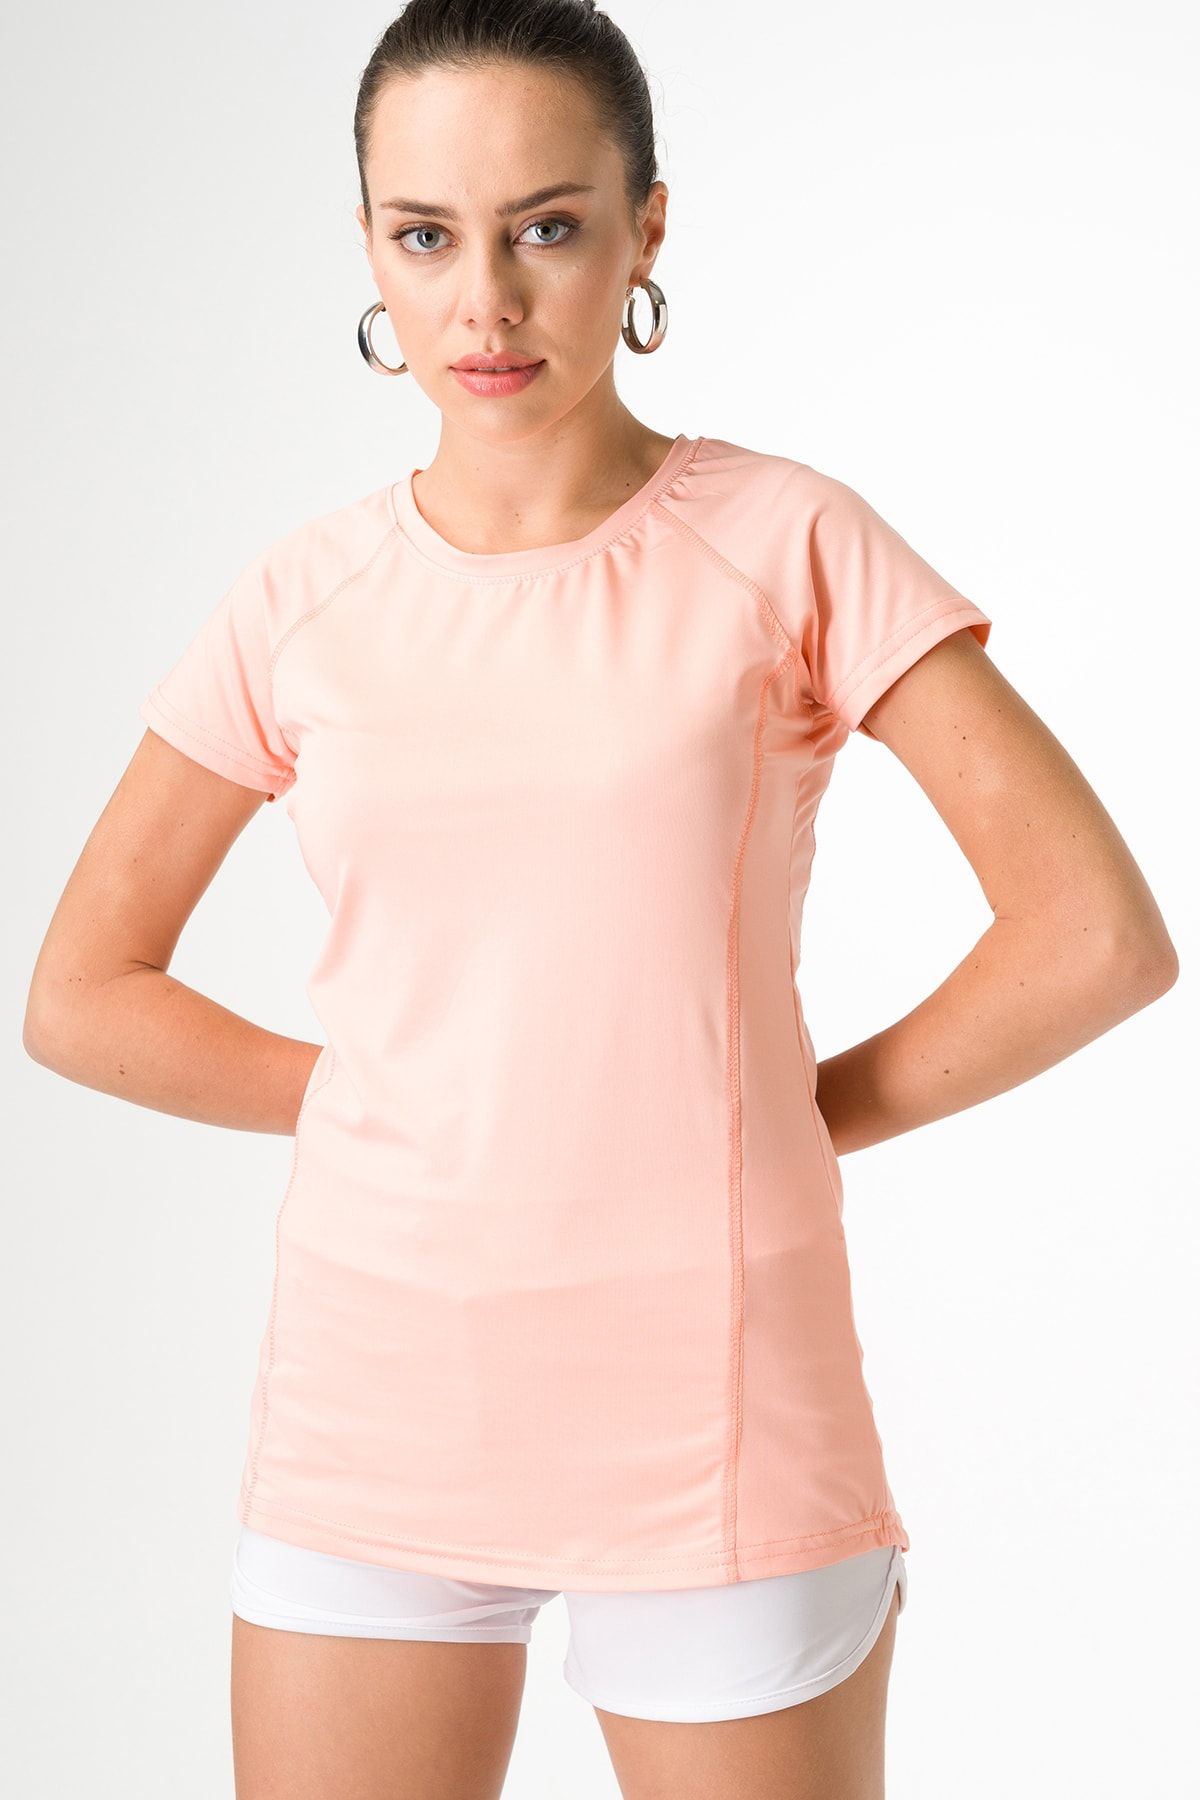 Runever Somon Slim Fit Kadın Spor T-shirt 49186-1